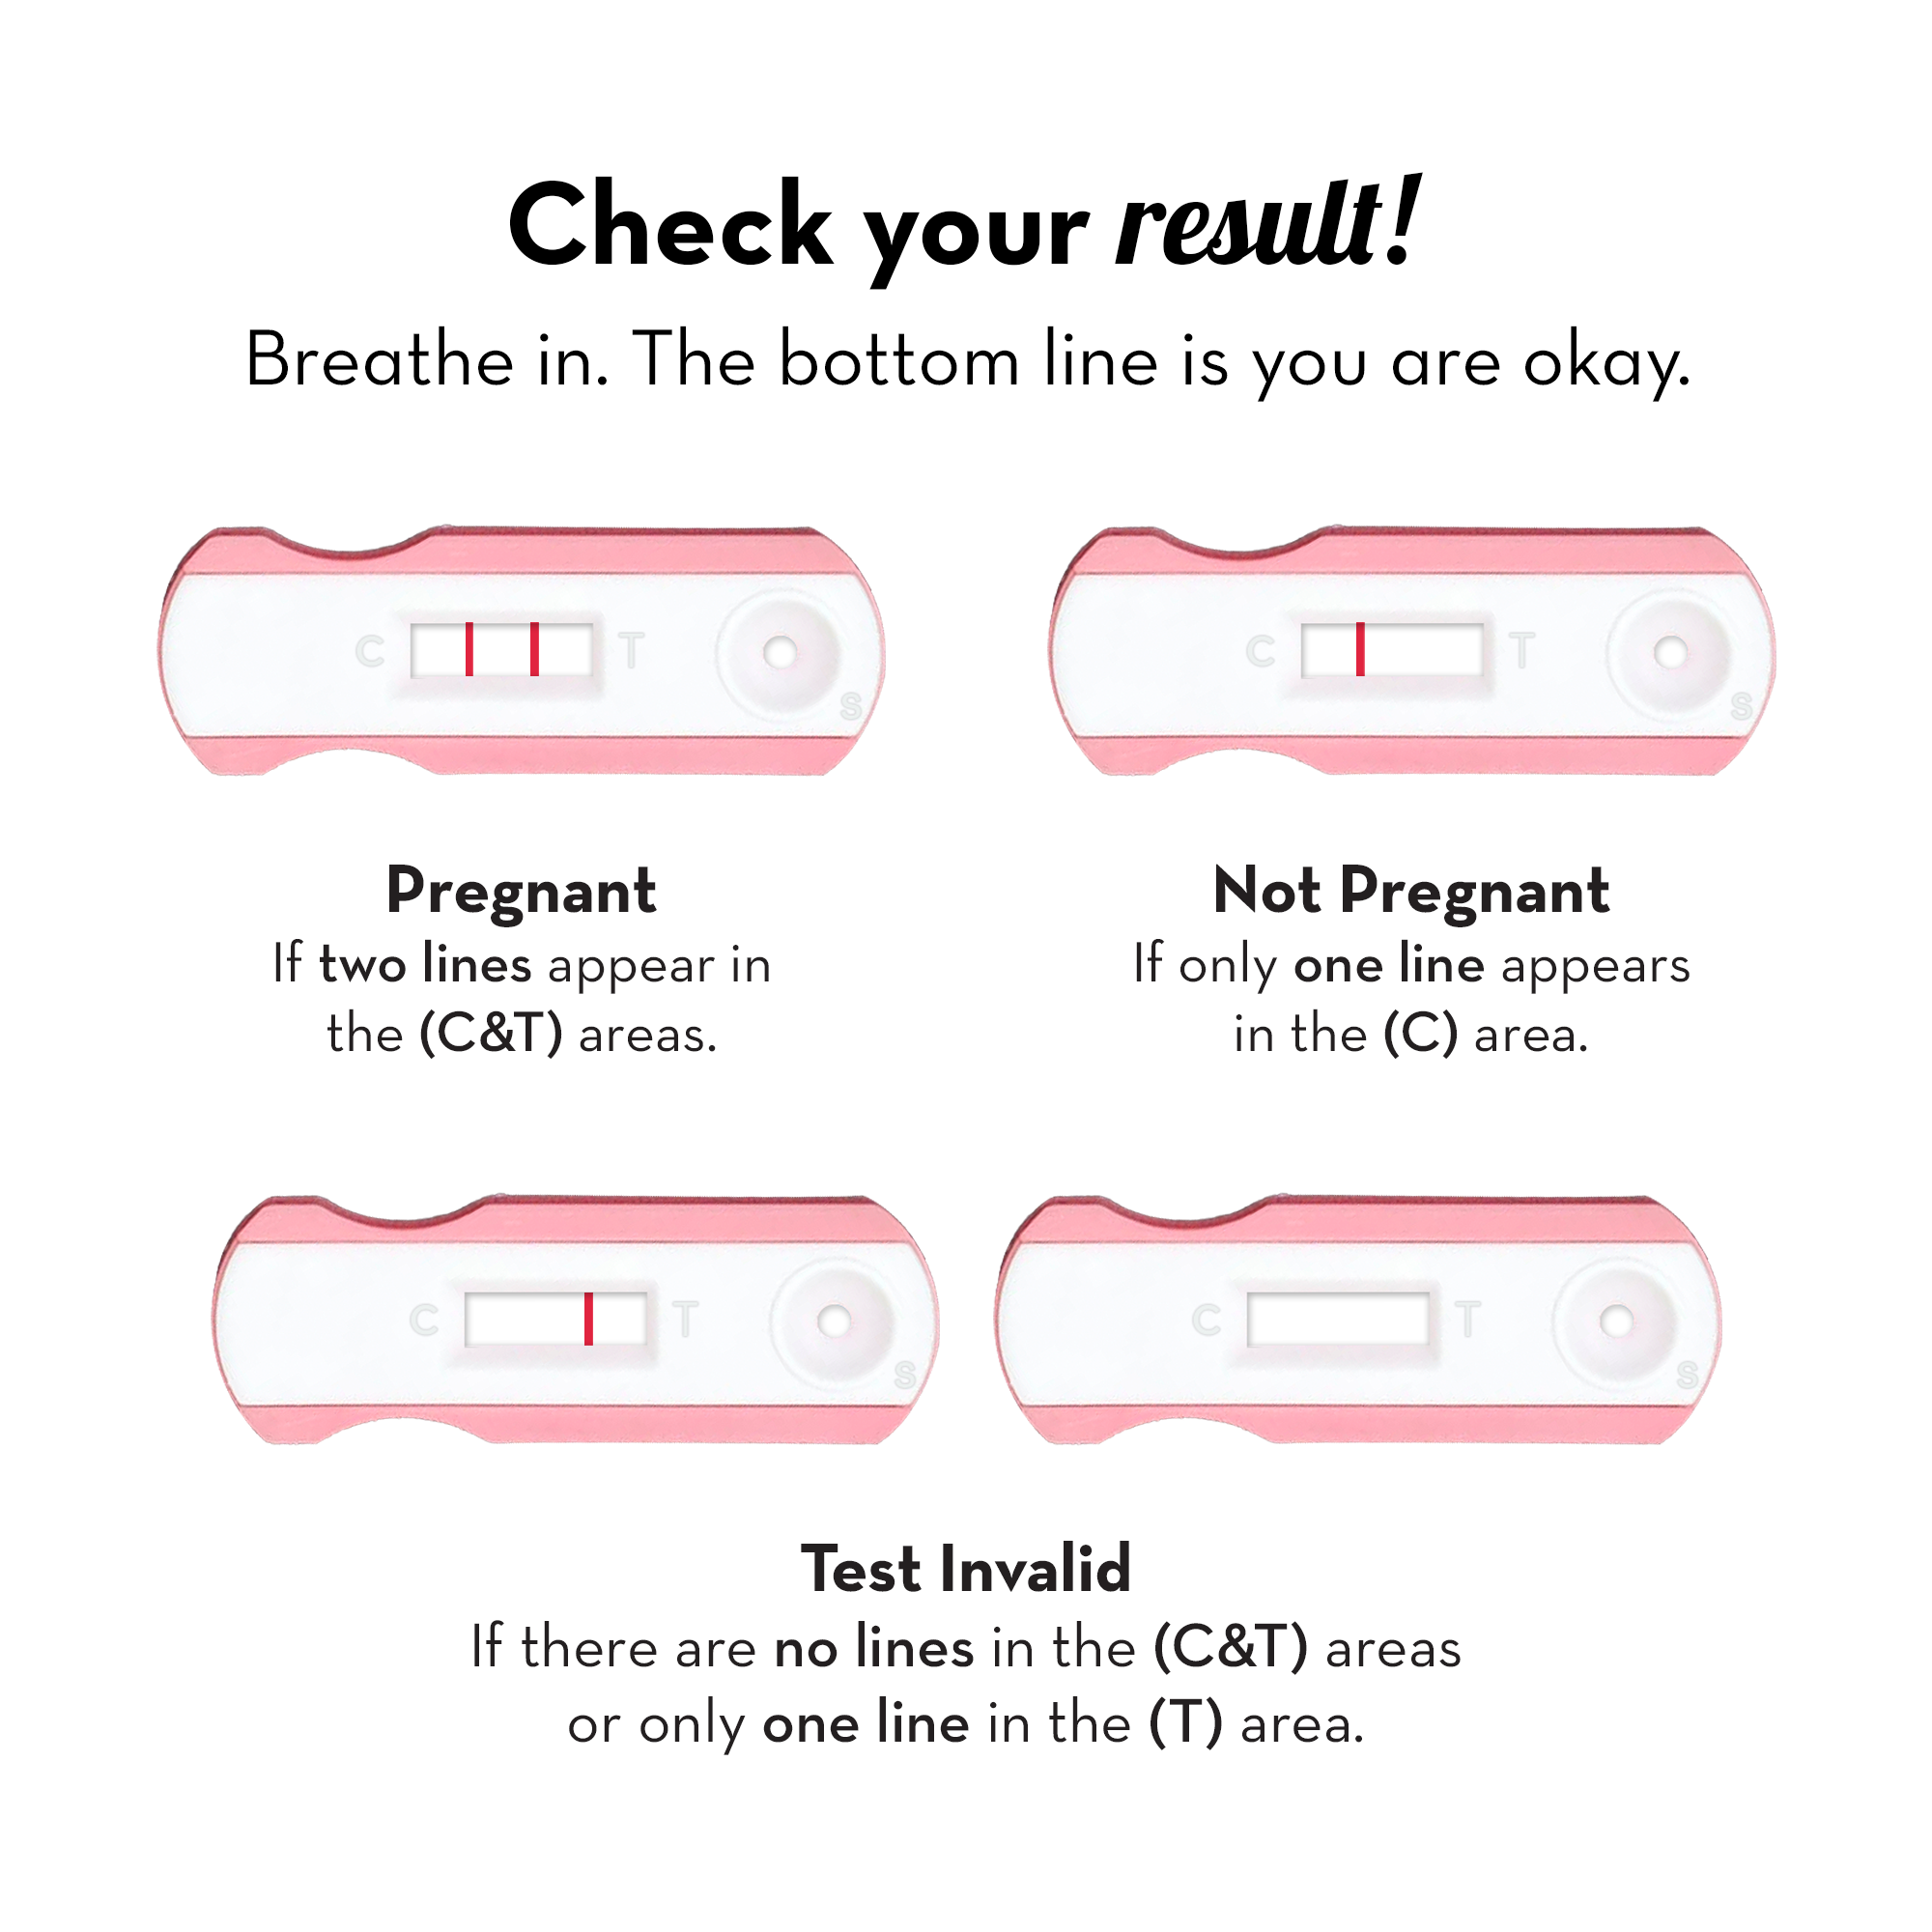 Preg Oh! Basic Pregnancy kit (Pack of 3)